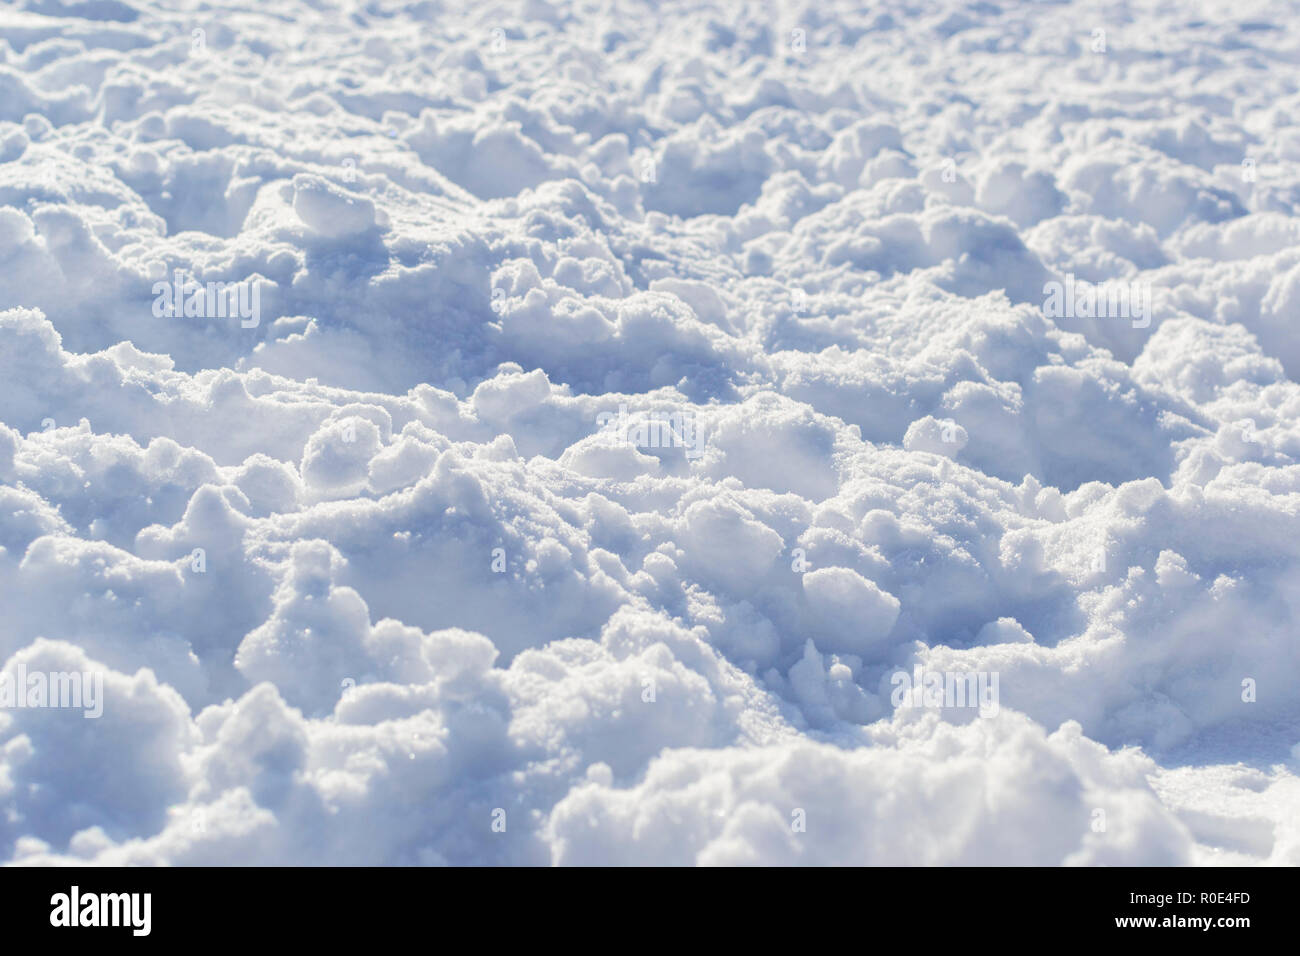 Tiefer Schnee haufen Textur Winter in Sicht Foto Stockfoto